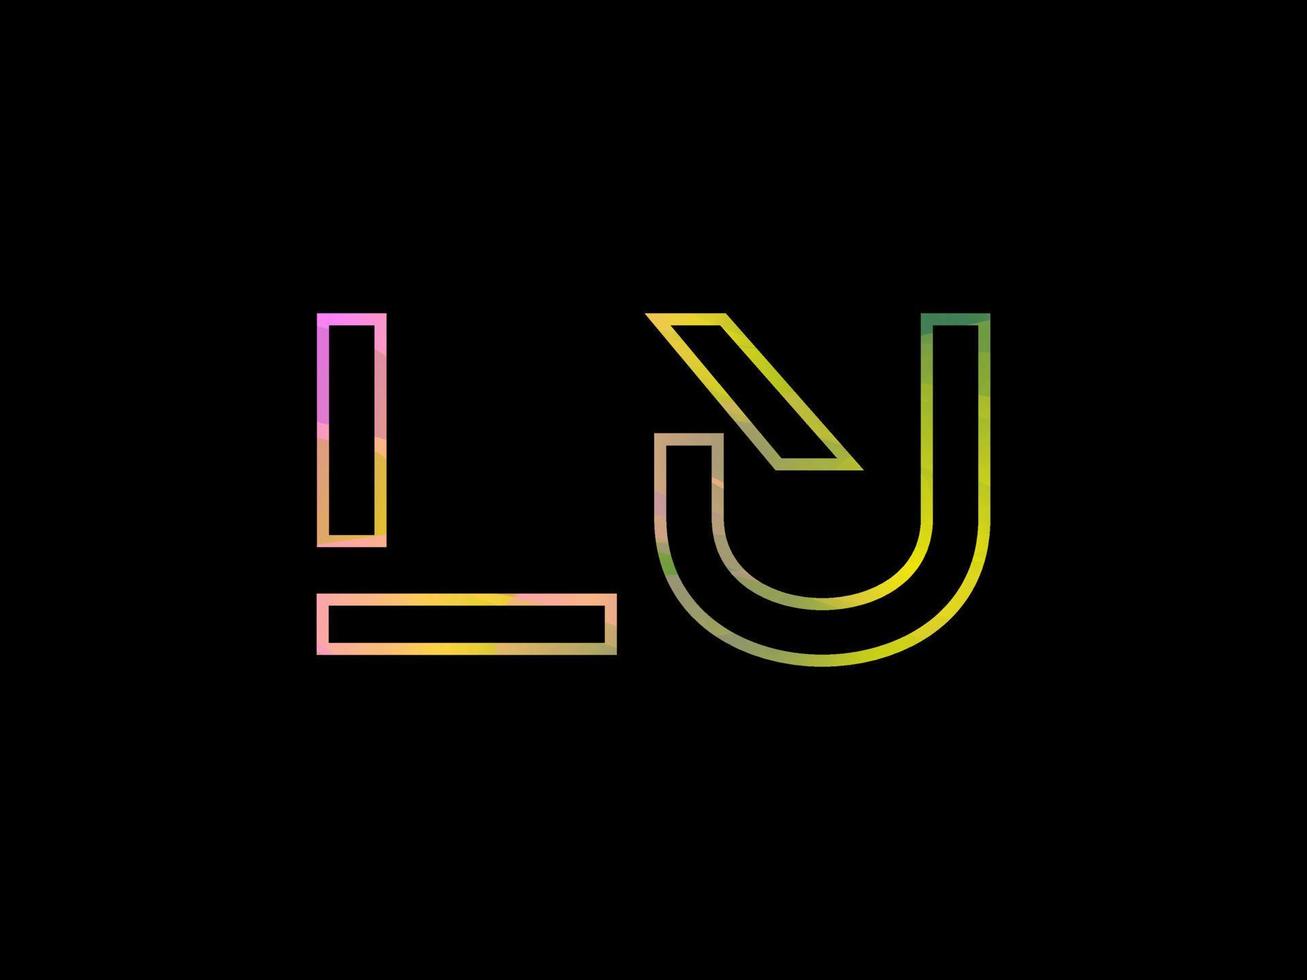 logo de lettre lu avec vecteur de texture arc-en-ciel coloré. vecteur professionnel.